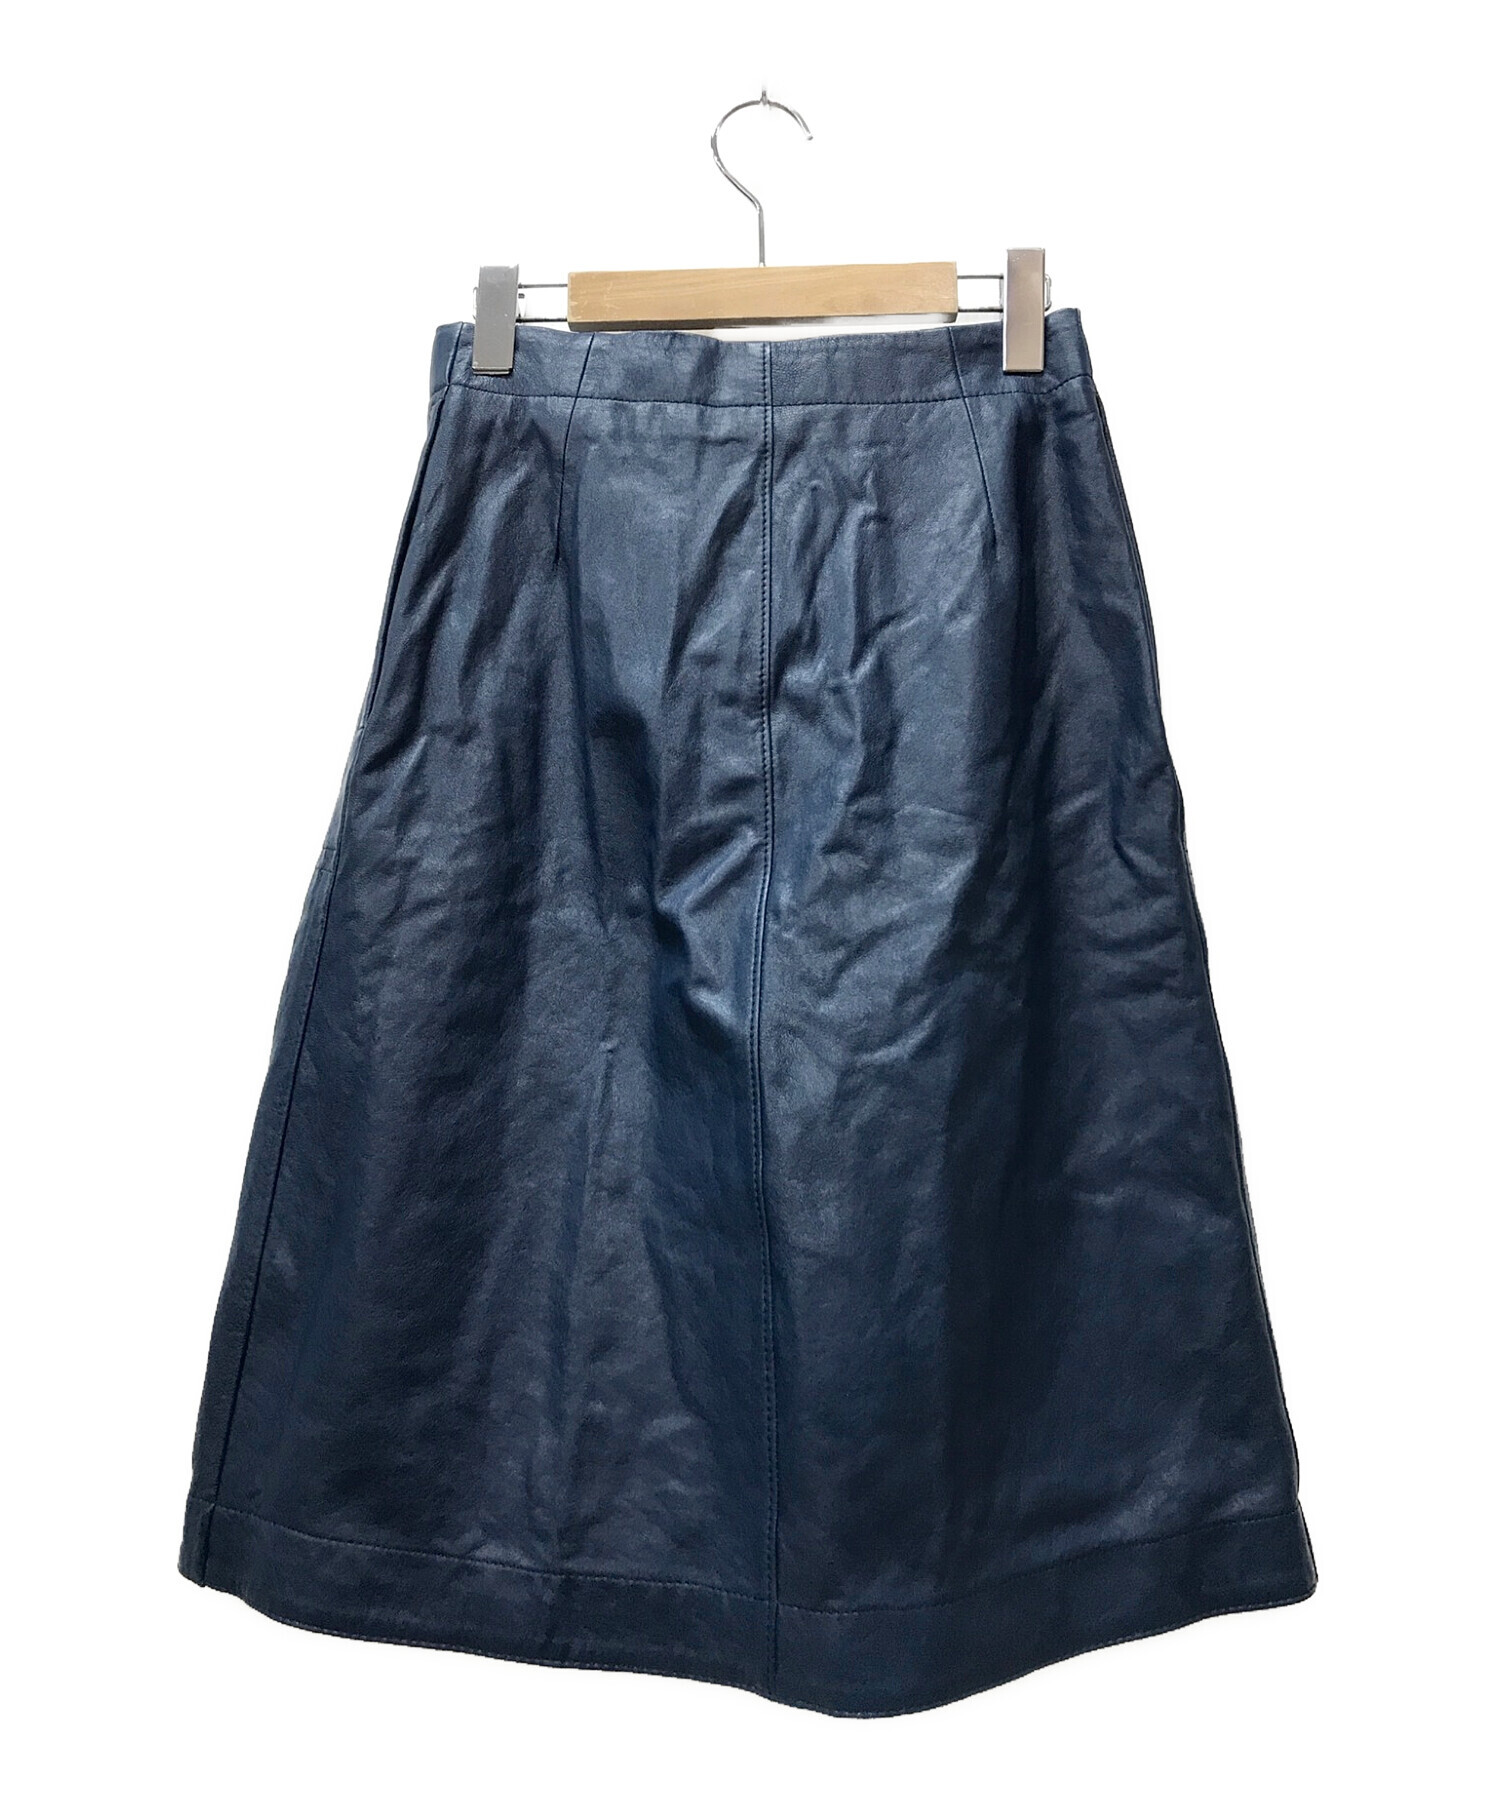 COACH (コーチ) ターンロックレザースカート ネイビー サイズ:SIZE 0